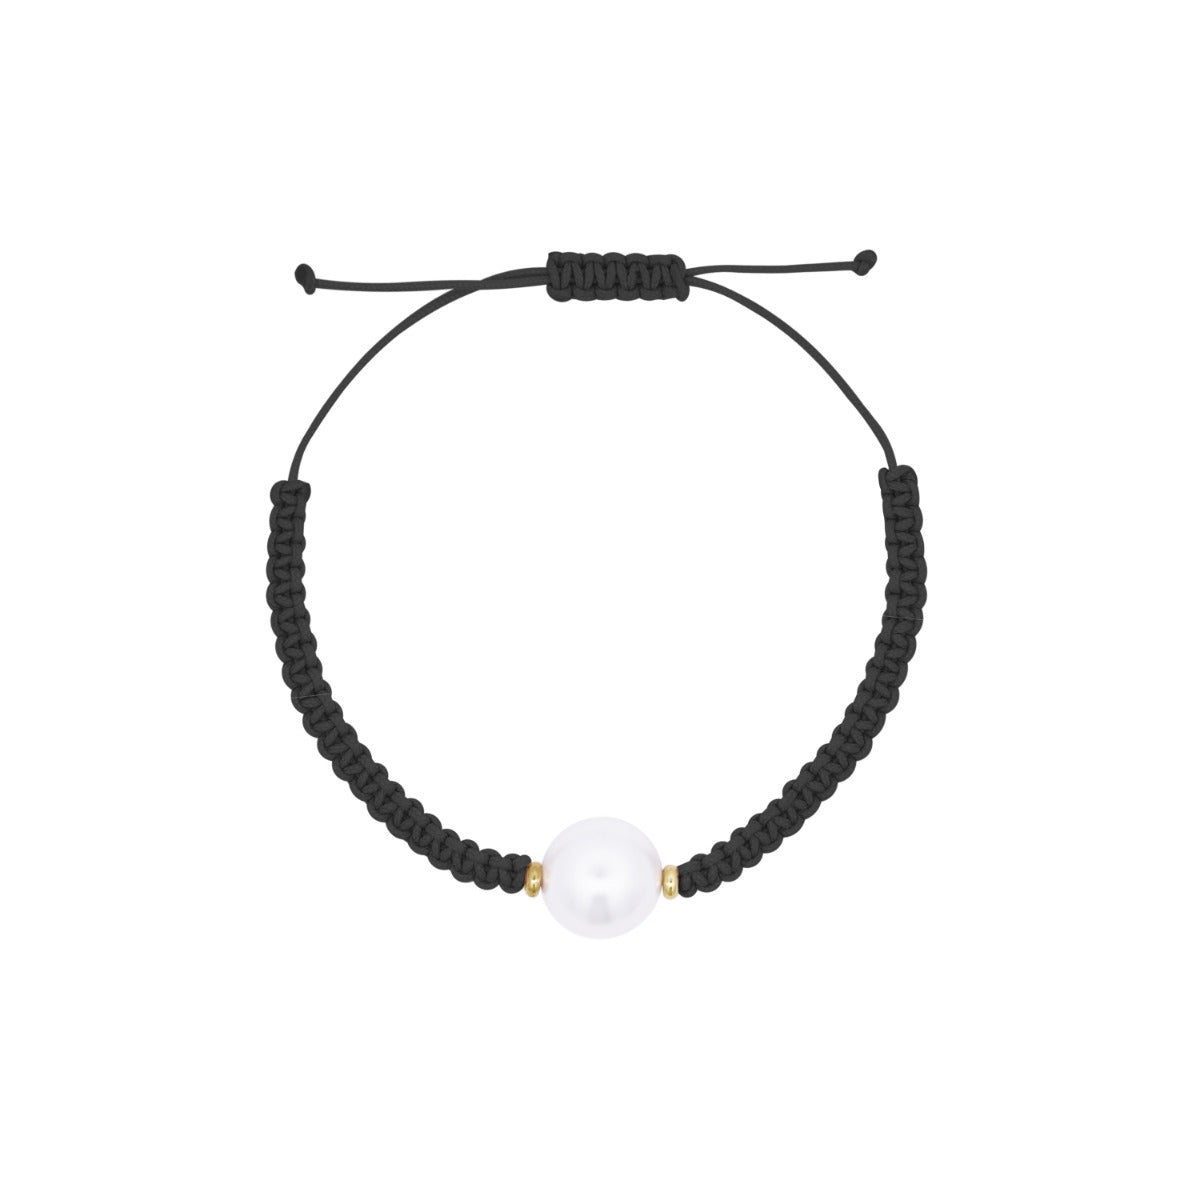 Bracelets - Bracelet black scooby-doo and central pearl -WHITESIDE - 1 | Rue des Mille